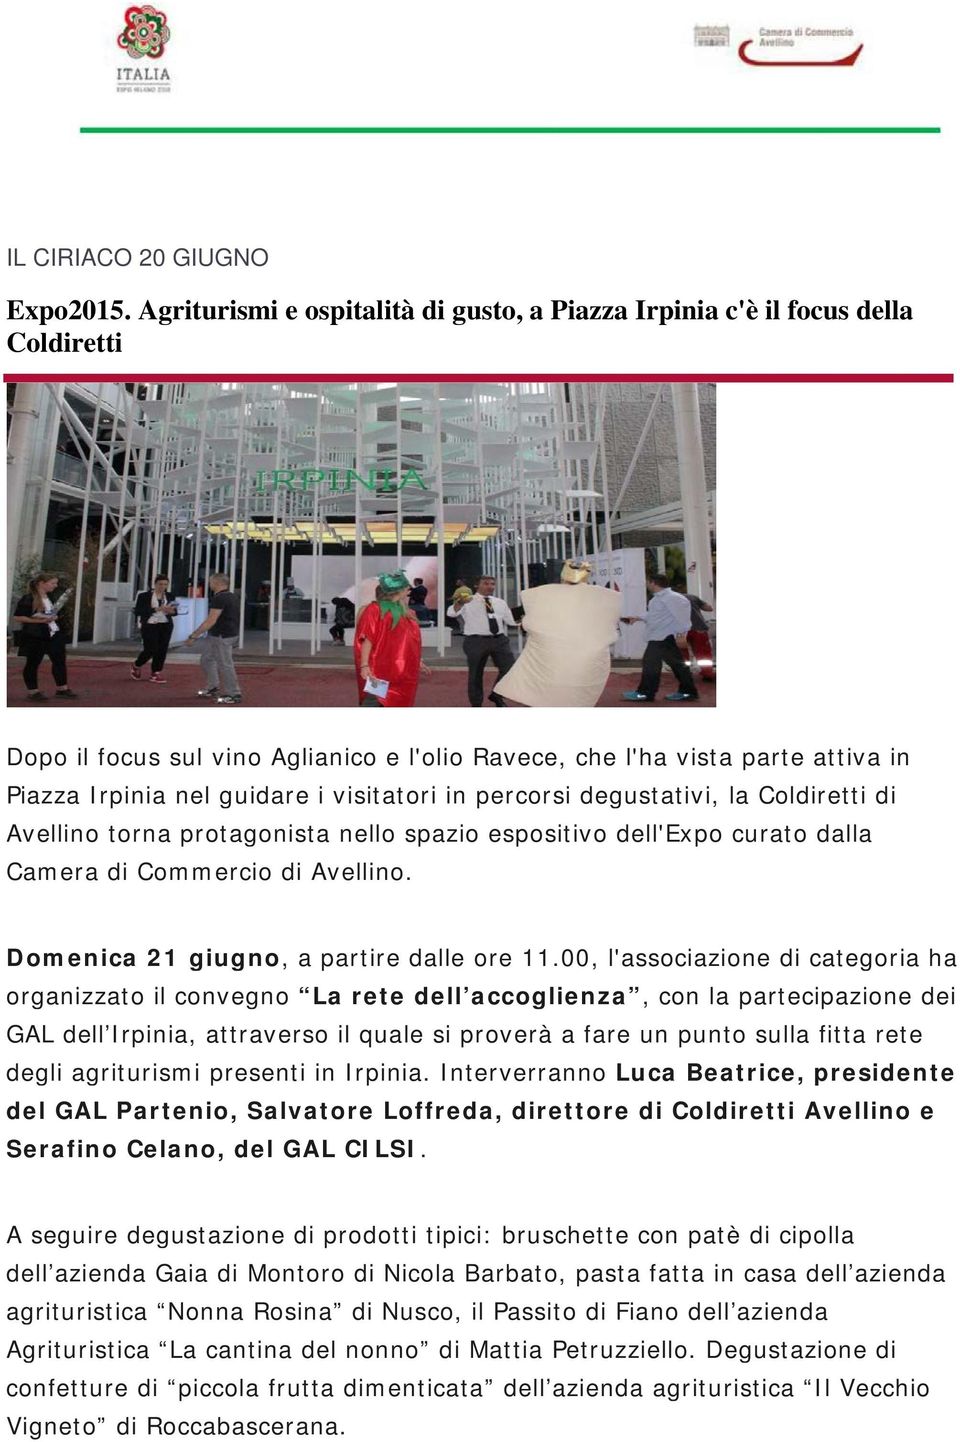 visitatori in percorsi degustativi, la Coldiretti di Avellino torna protagonista nello spazio espositivo dell'expo curato dalla Camera di Commercio di Avellino.